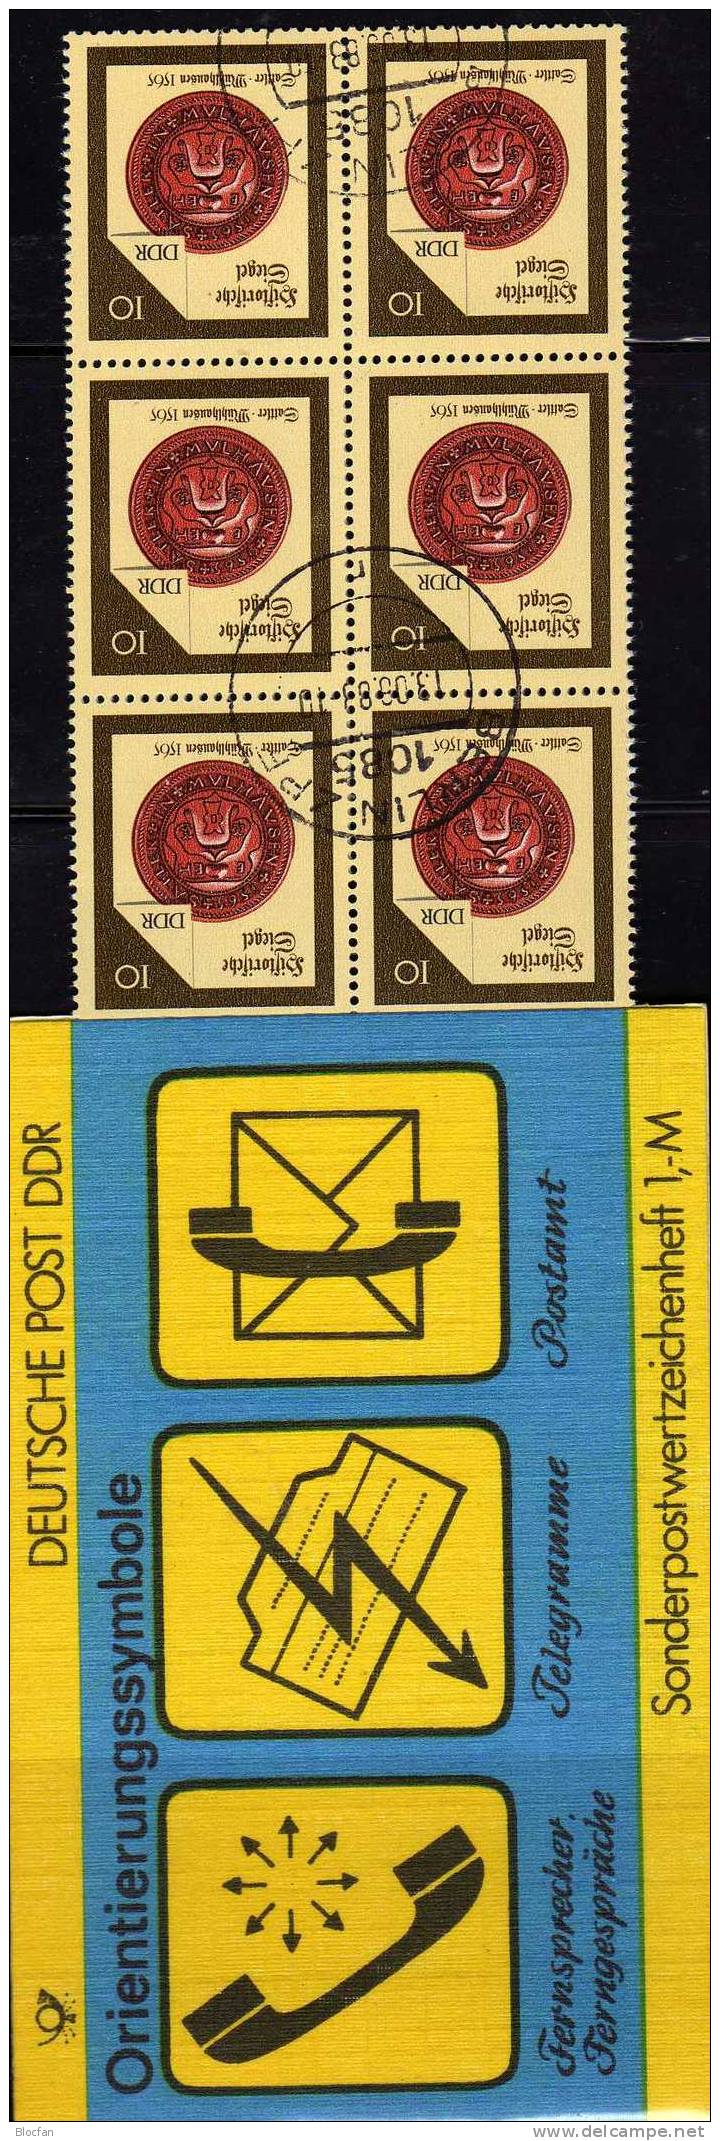 SMH 32 Orientierungs-Sympole Der Post 1987 Telefon Telegramm Fax DDR 10x3156 + SMHD32 O 8€ Mit Siegel Booklet Of Germany - Markenheftchen